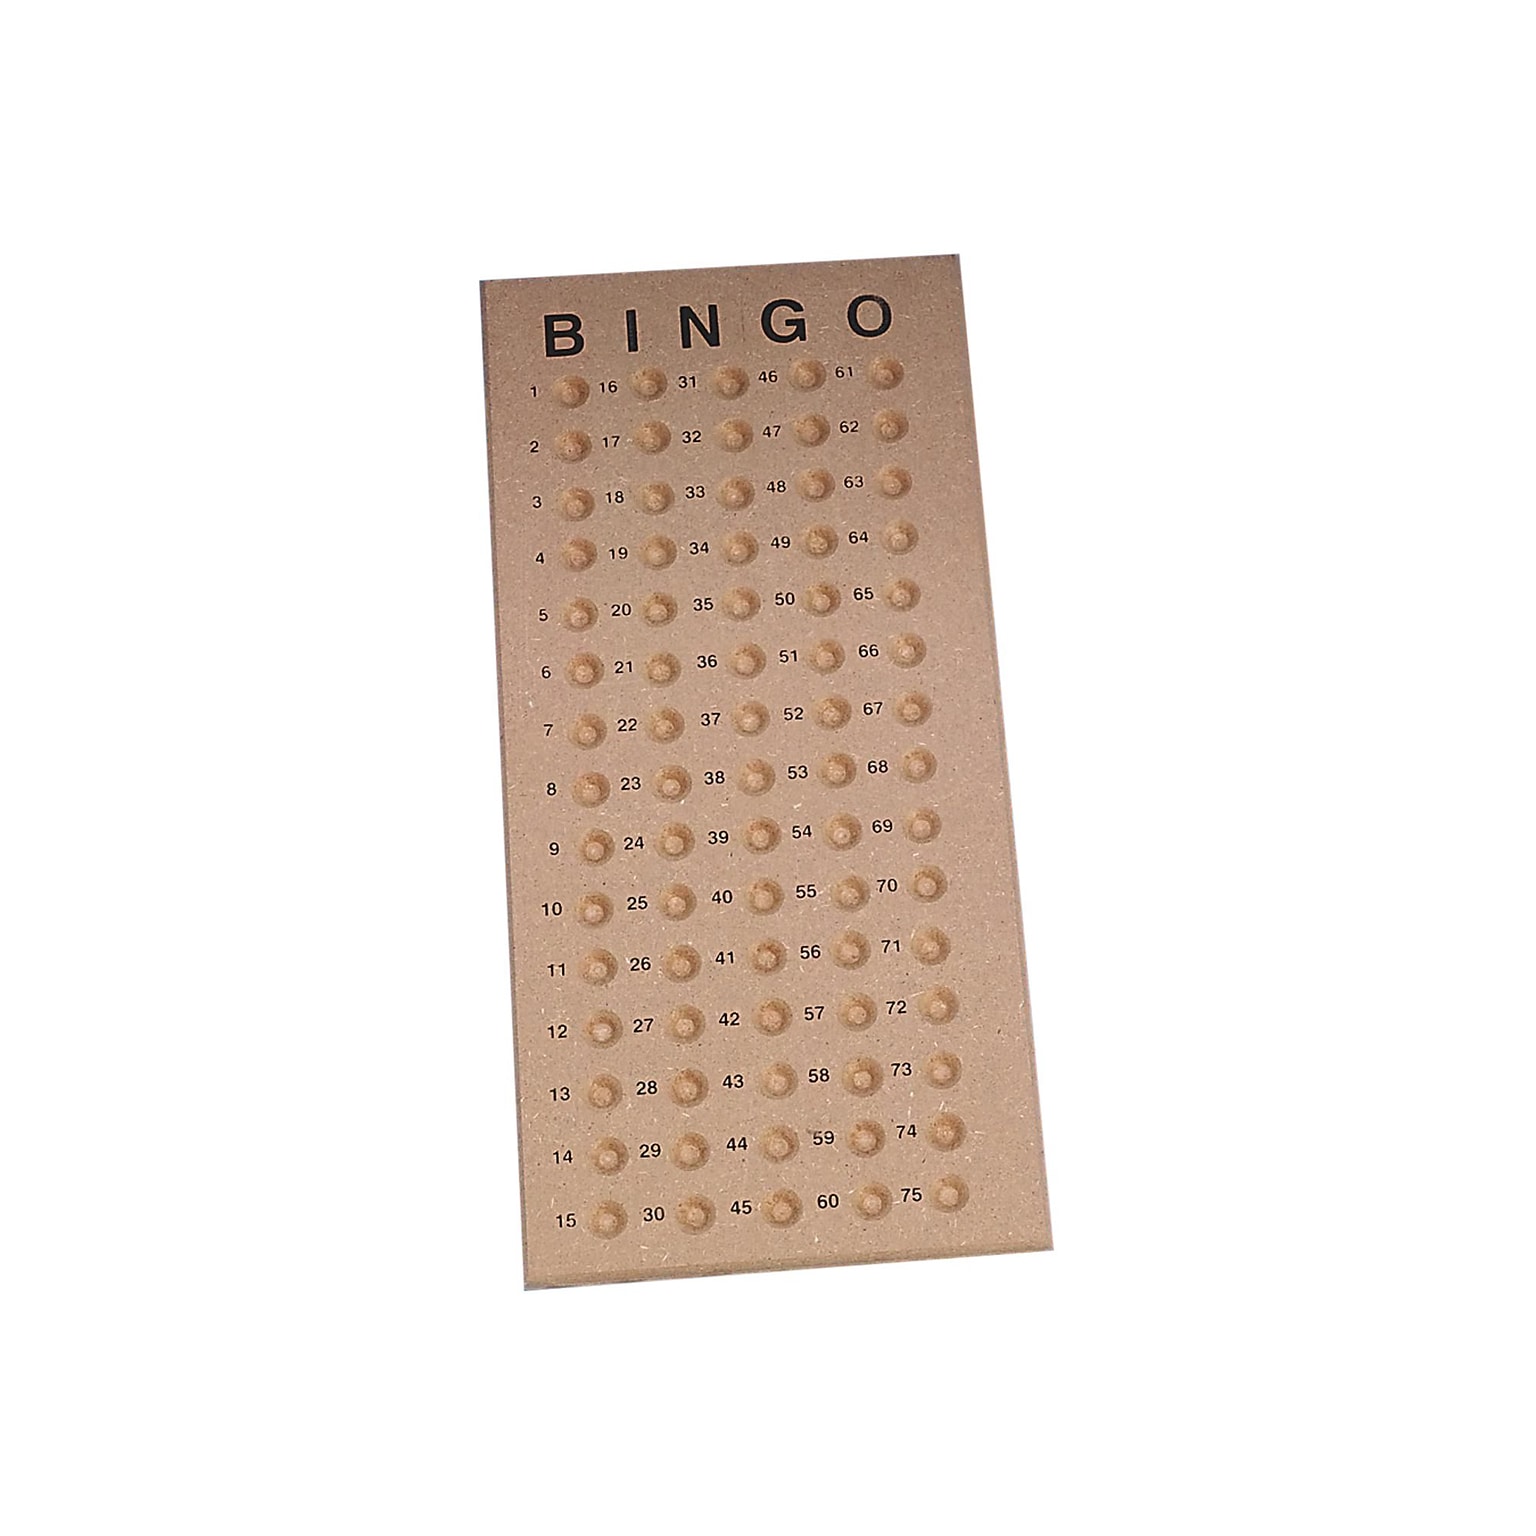 S&S 15 1/2 x 7 1/4 Bingo Masterboard (GA2047)